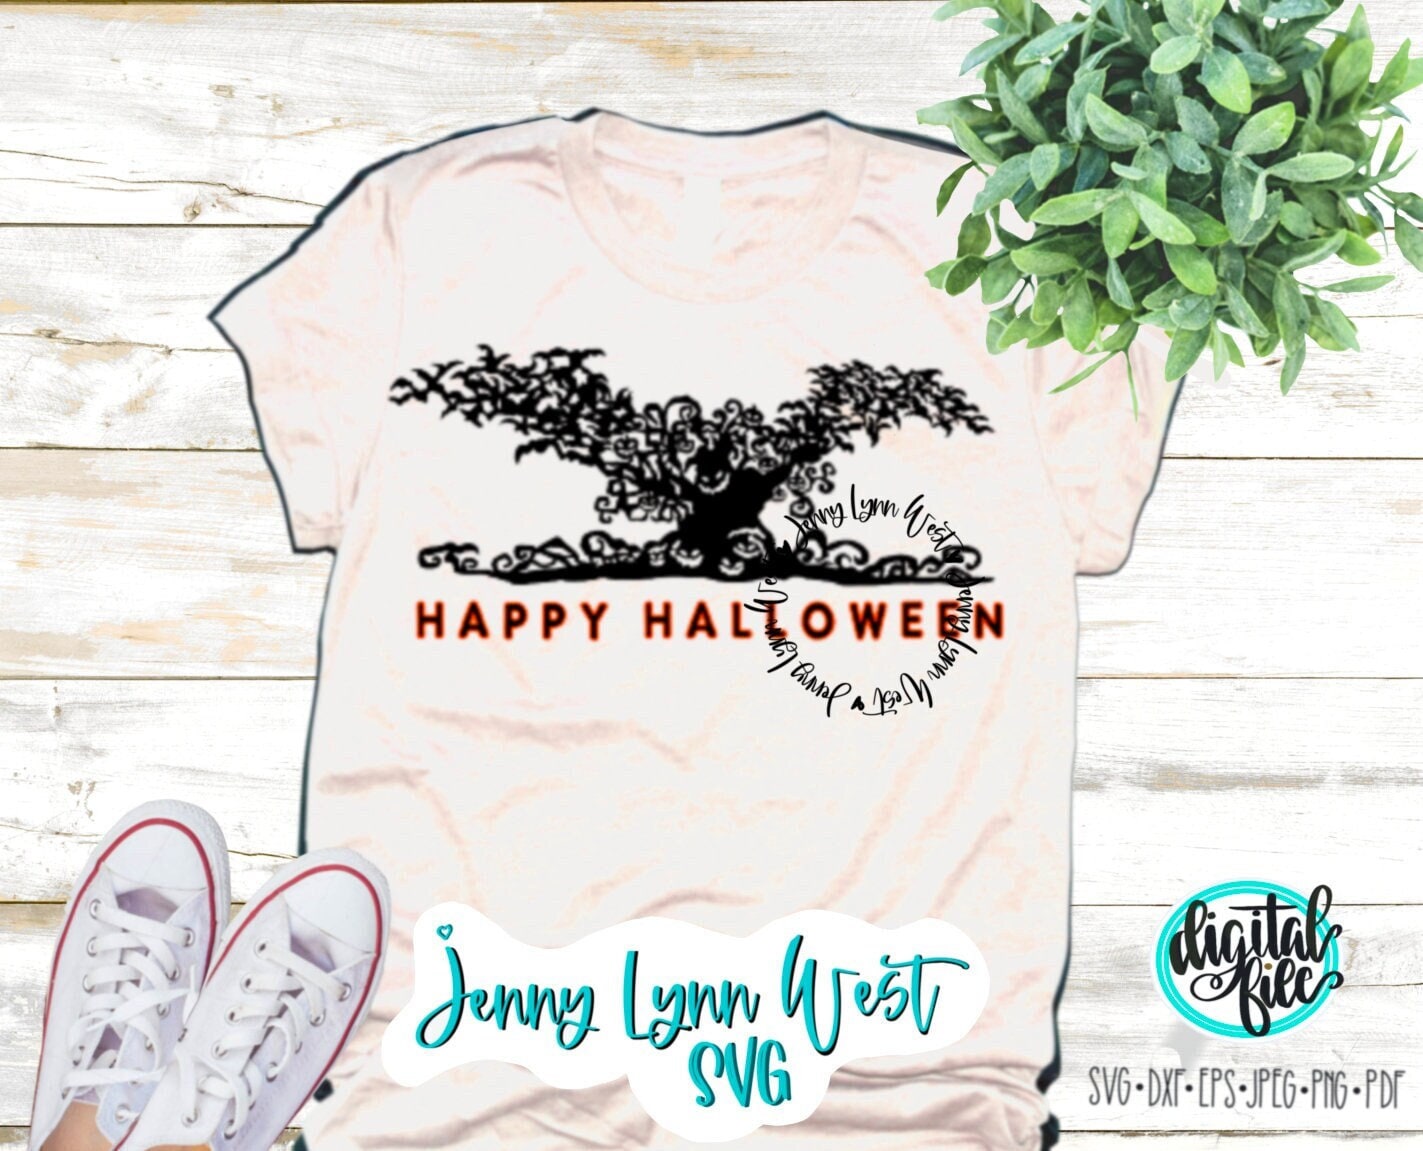 Happy Halloween SVG Down Oogie Boogie SVG Halloween SVG Boo Bash Shirt Digital Shirt Cut file Cricut Sublimation Halloween Bats Shirt png